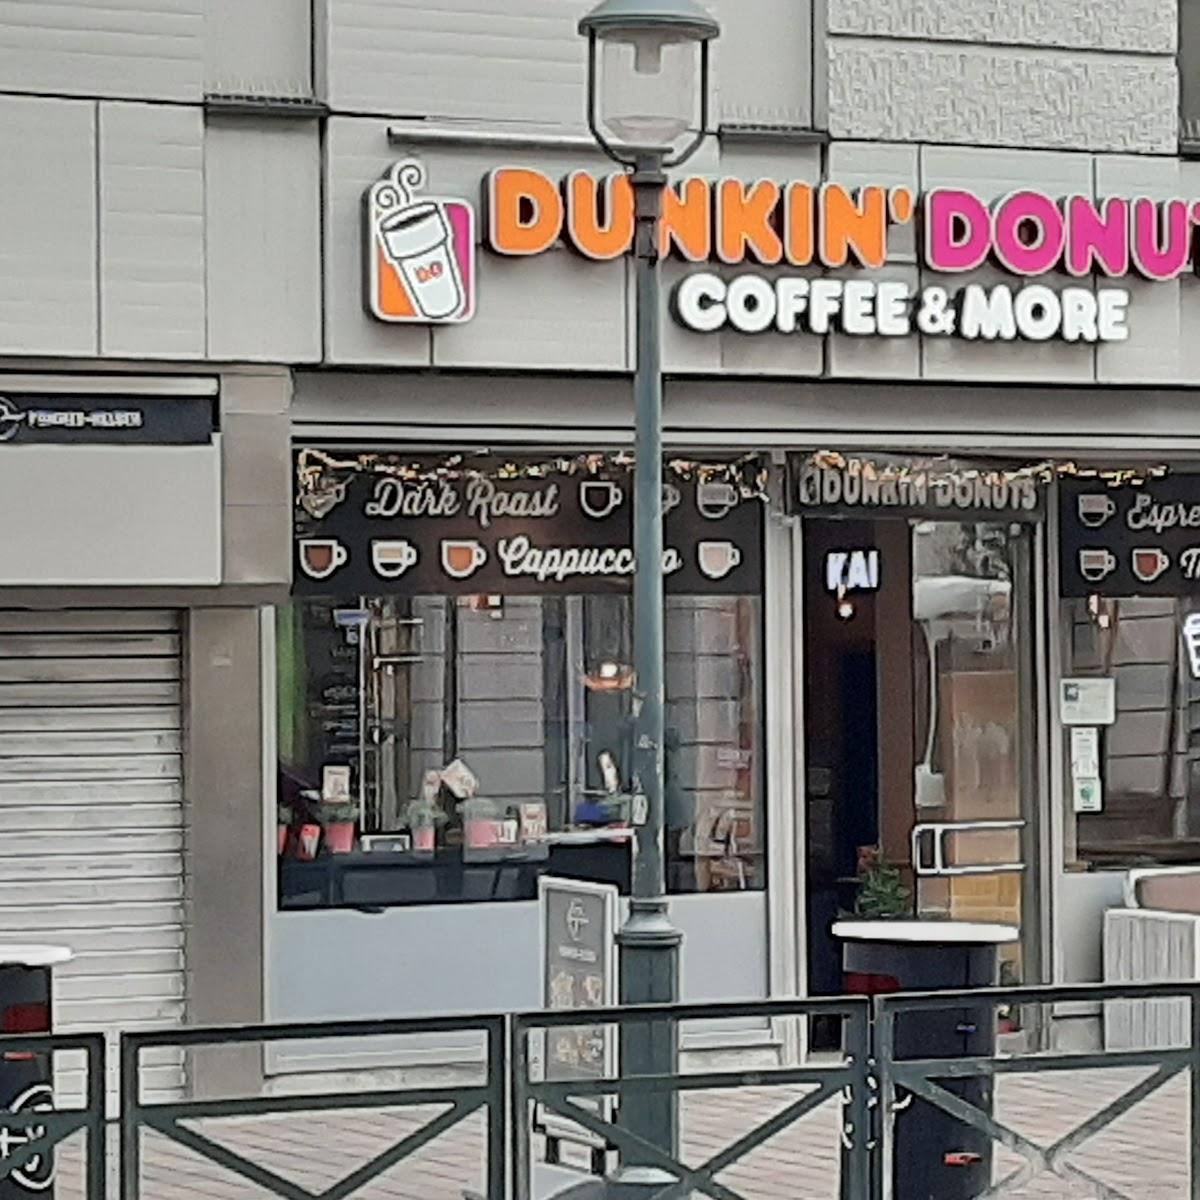 Restaurant "Dunkin